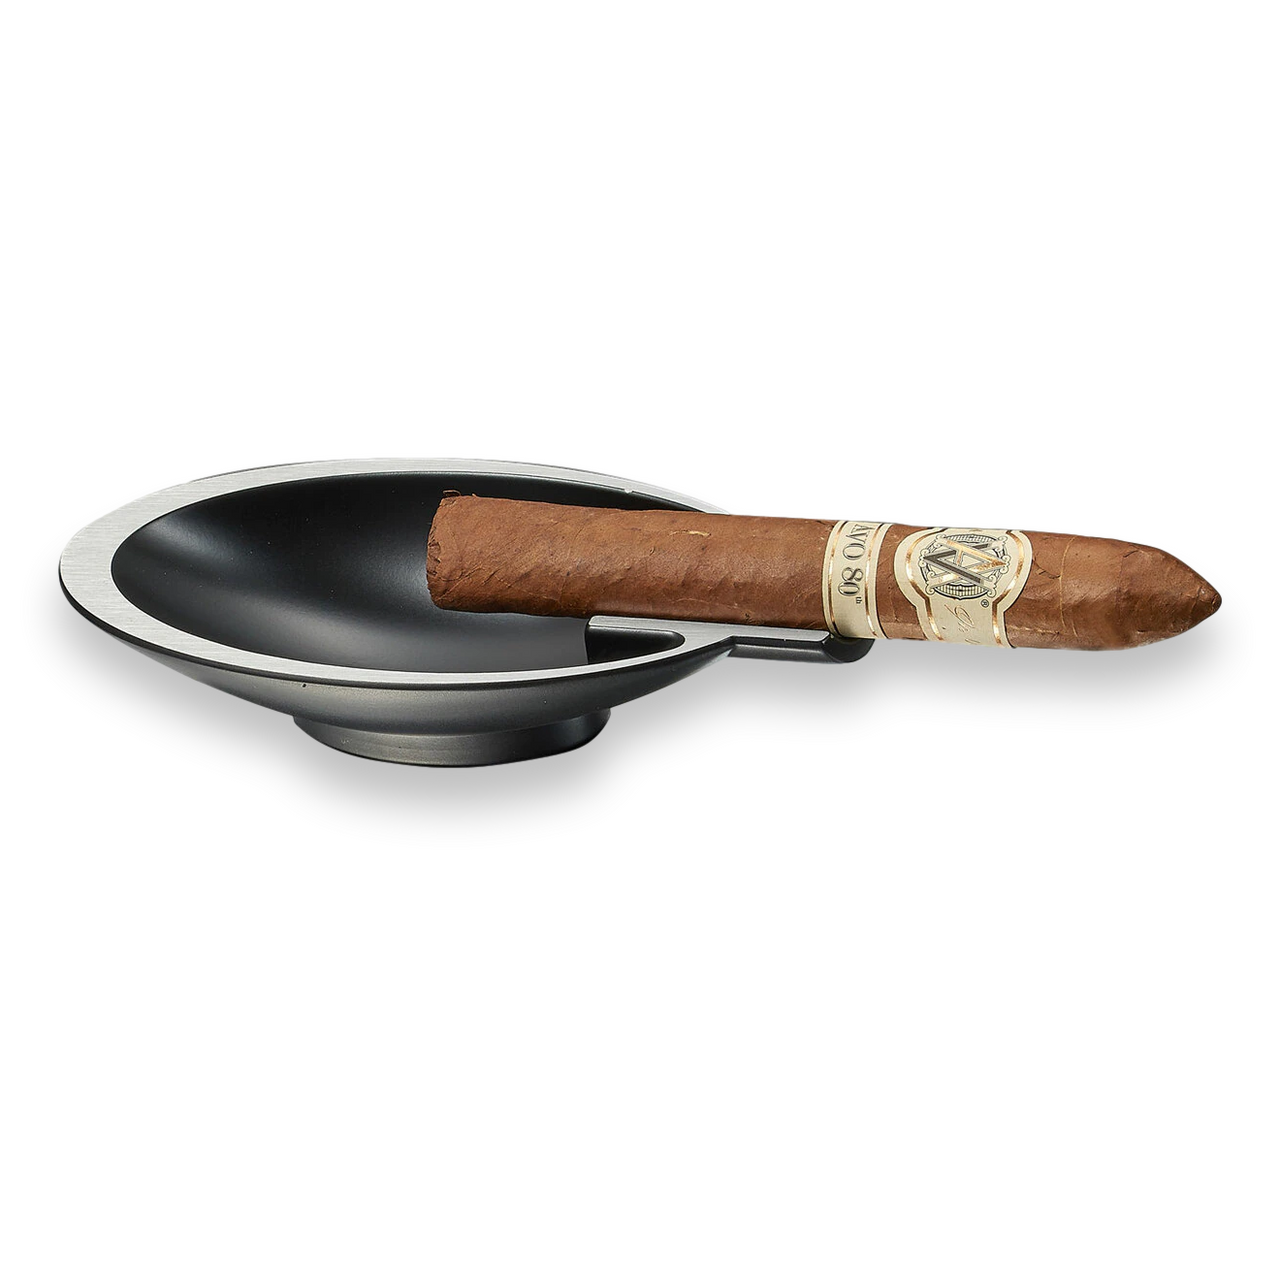 Visol VASH409 Heavyweight Gunmetal Cigar Ashtray